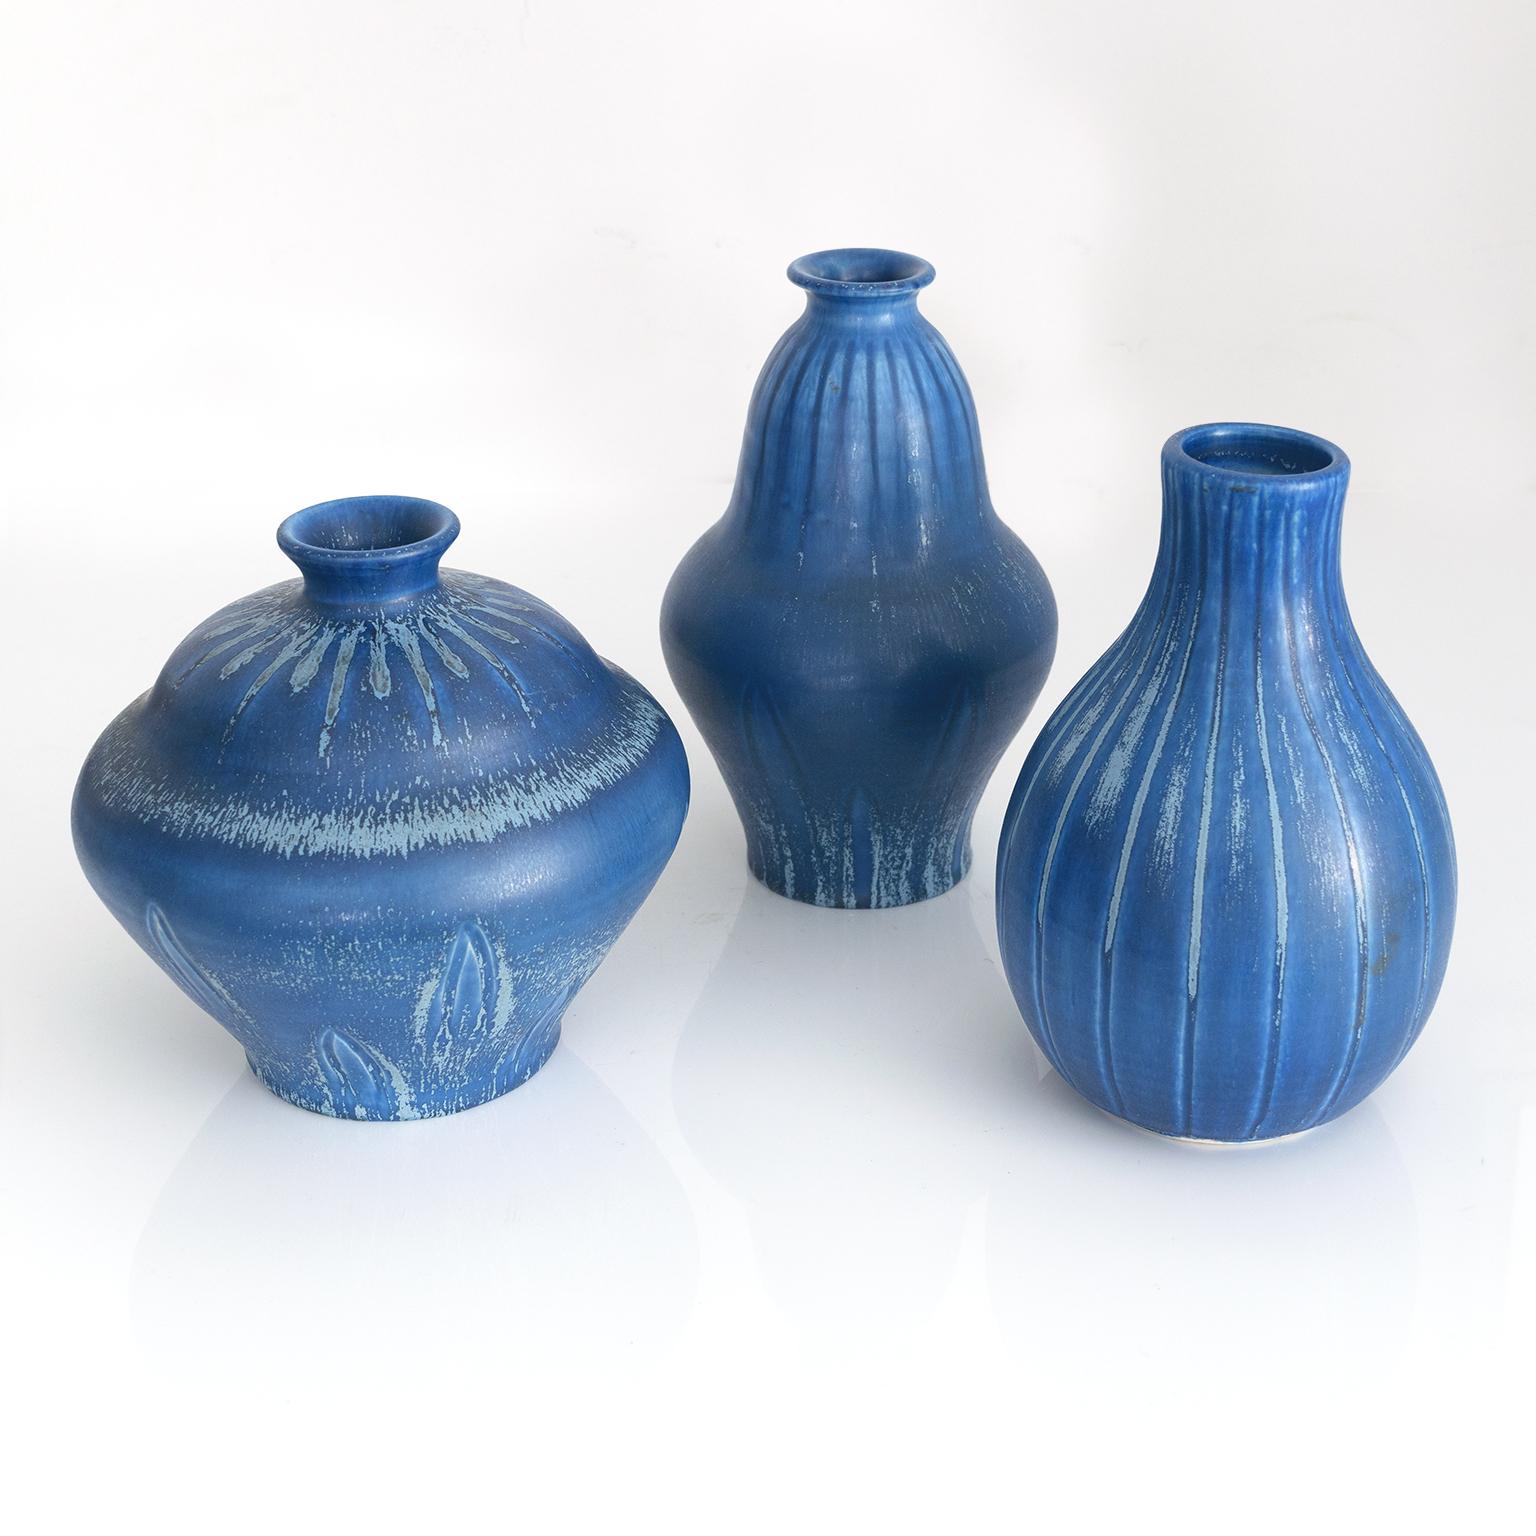 Eva Jancke-Bjrk entwarf von 1925 bis 1956 für Bo Fajans in den goldenen Jahren des Unternehmens. Diese Vase ist ein schönes Beispiel für ihr Formdesign und wiederum eine hervorragende Glasurwahl. Diese Vase wurde in den frühen 1940er Jahren